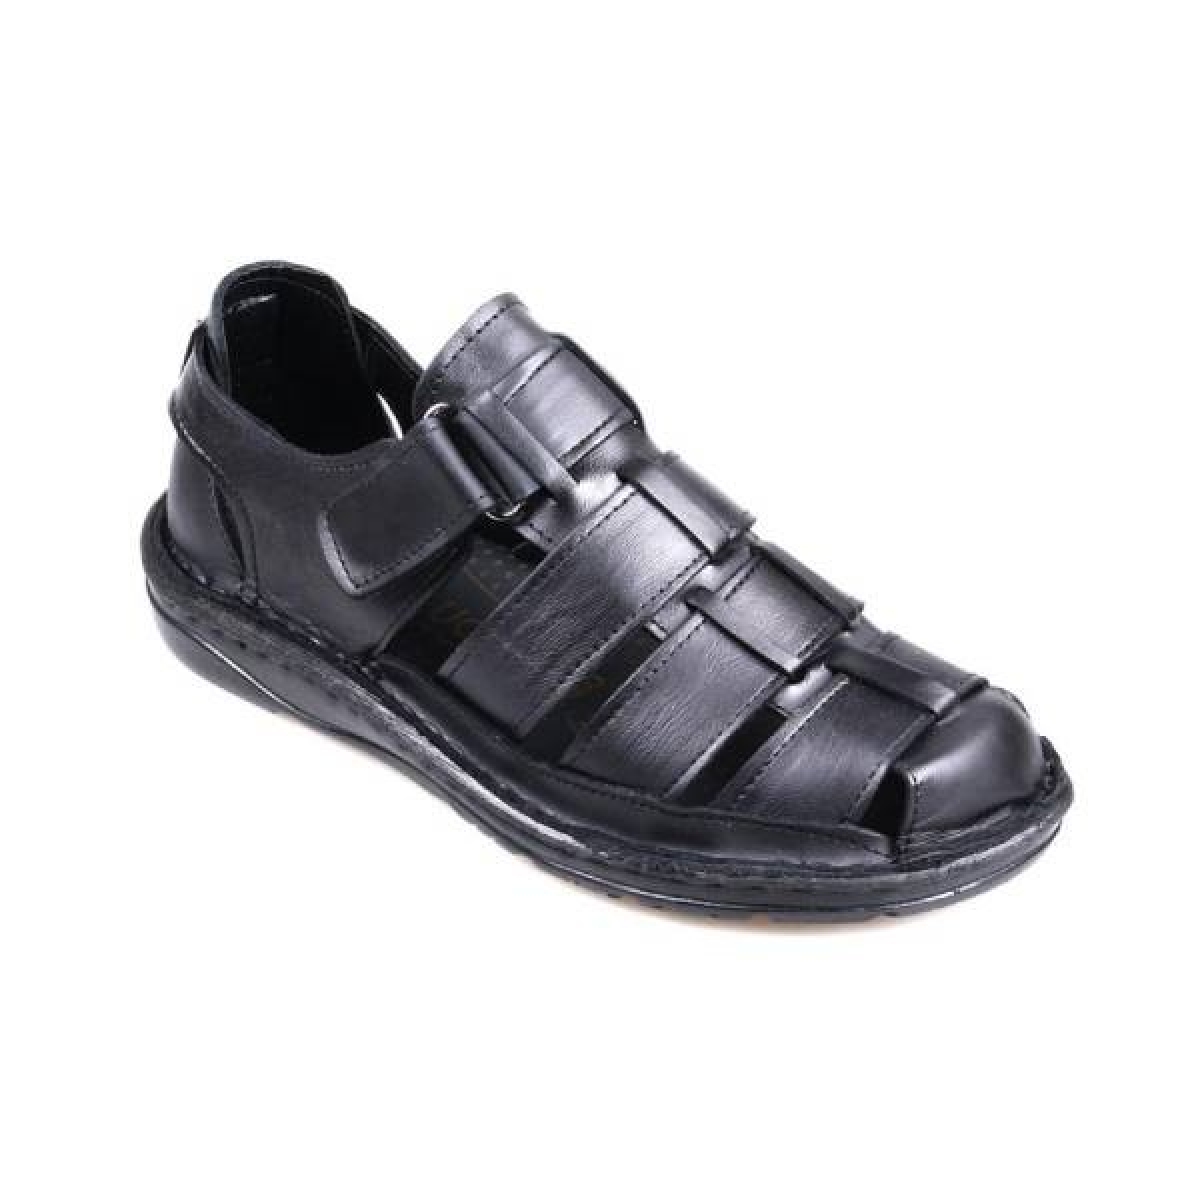 Flo Men Shoes 1001 Ortapedik Siyah Sandalet Ayakkabı. 1